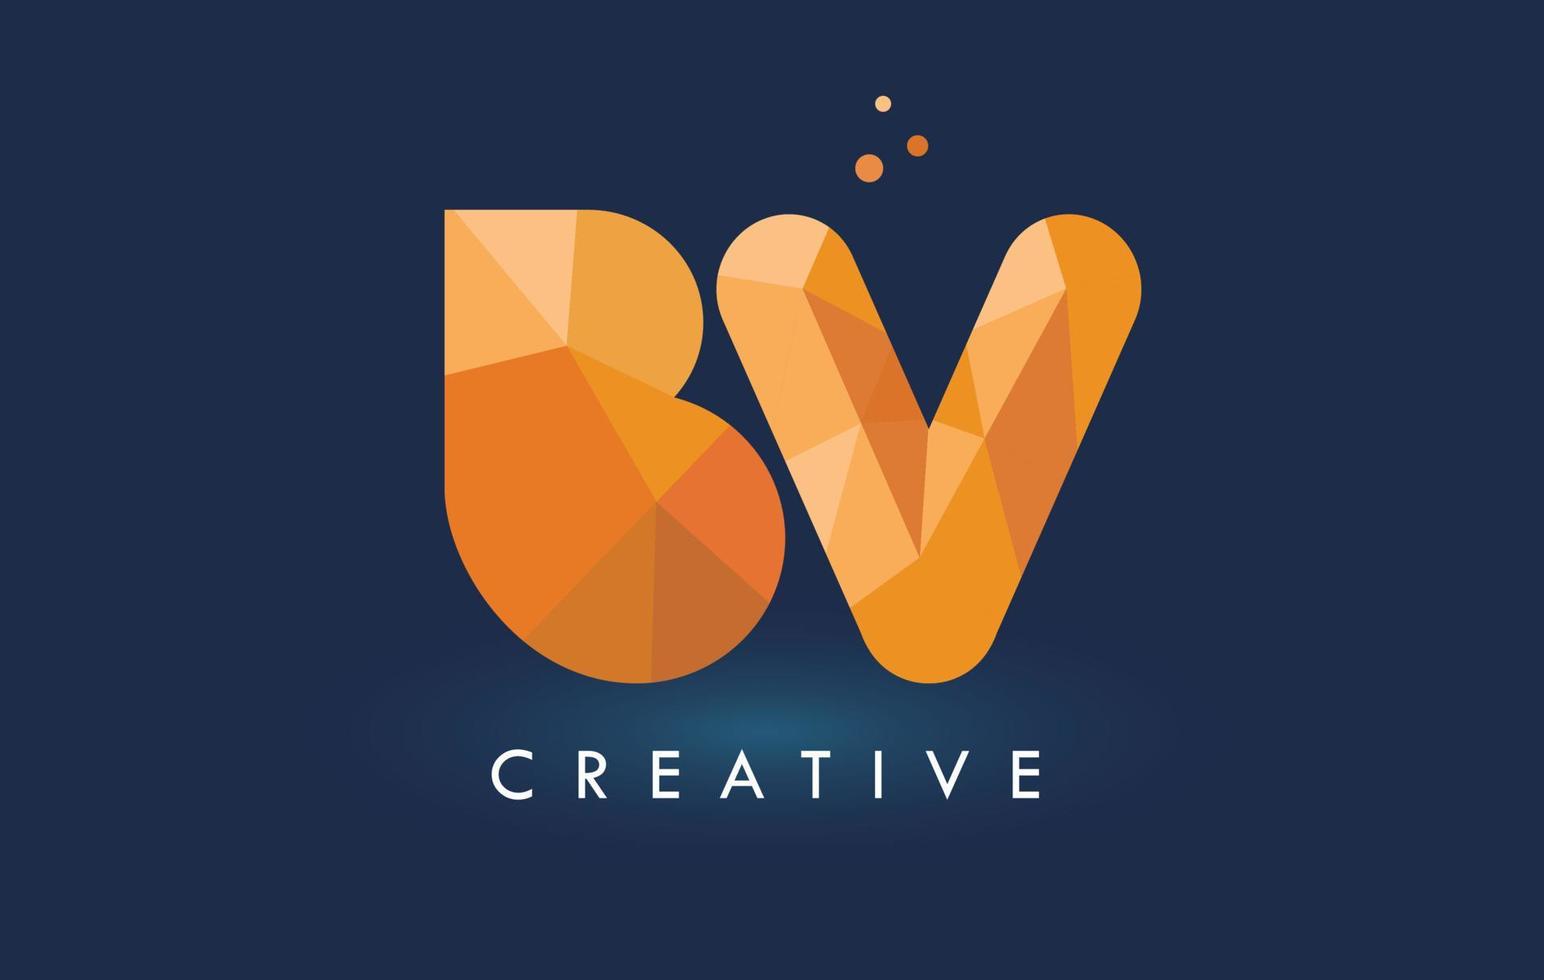 Letra bv con logo de triángulos de origami. diseño creativo de origami naranja amarillo. vector